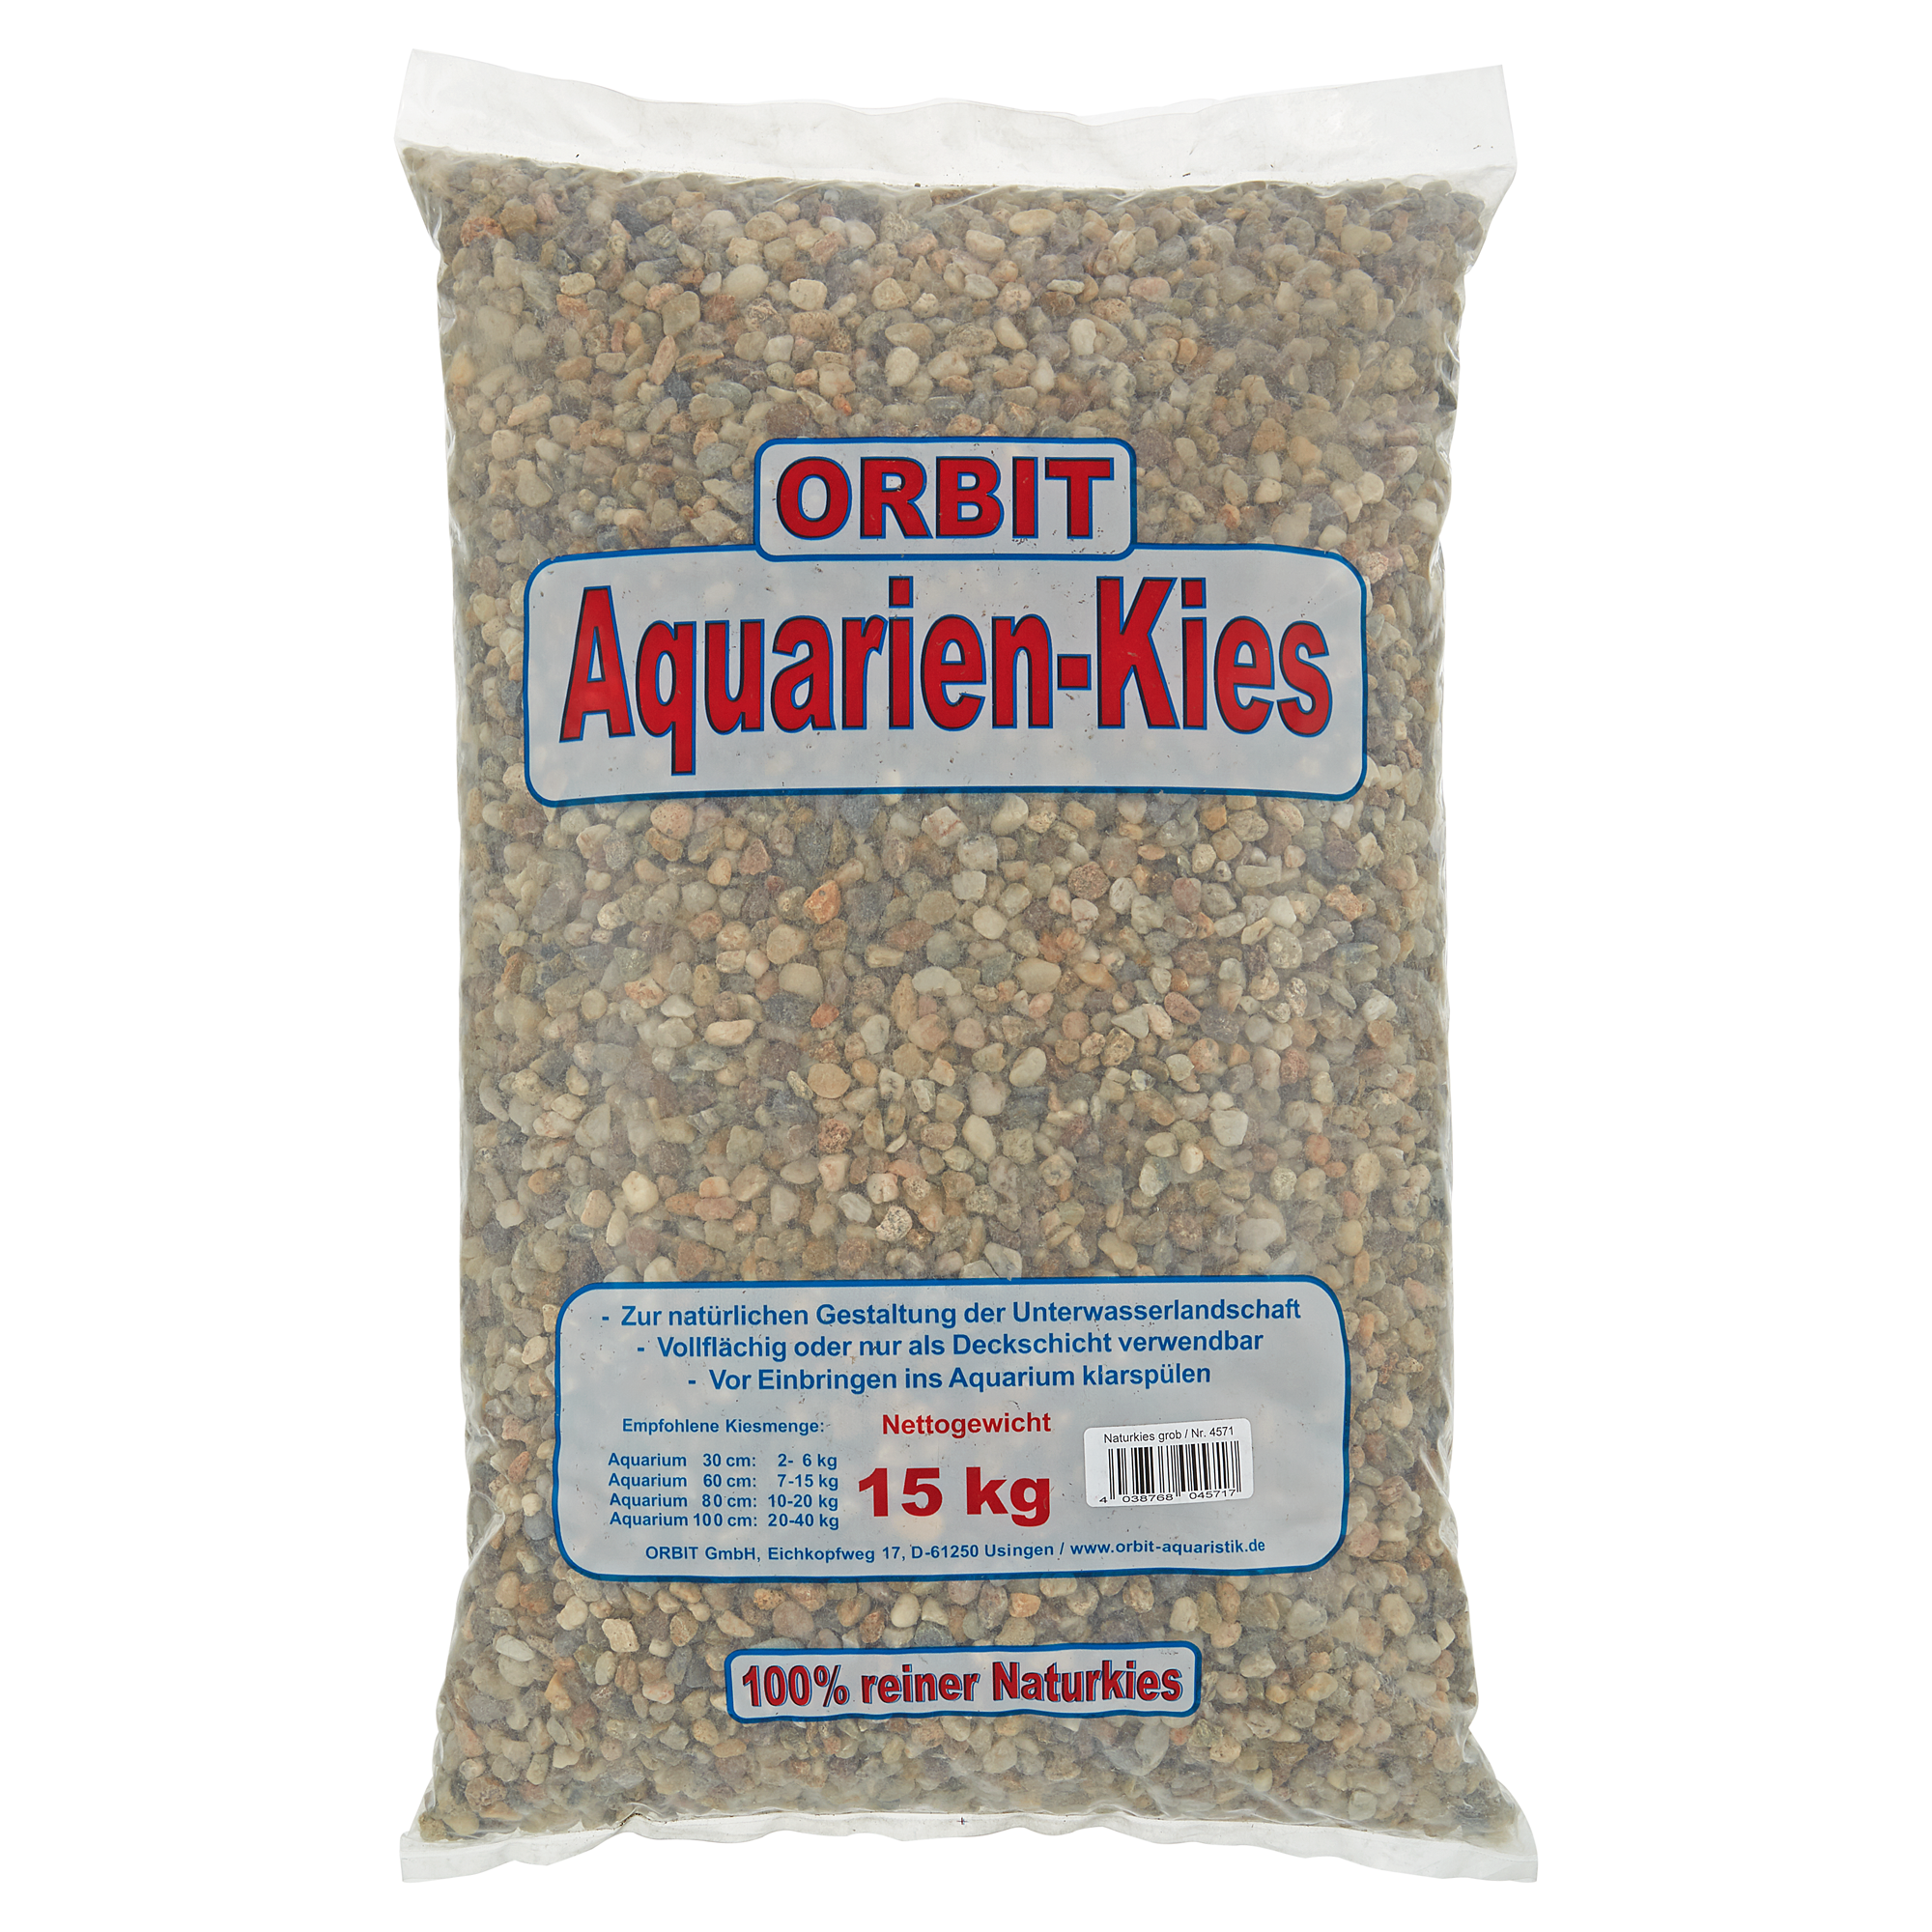 Aquarien-Kies Naturkies grau/braun Ø 4 - 8 mm 15 kg + product picture